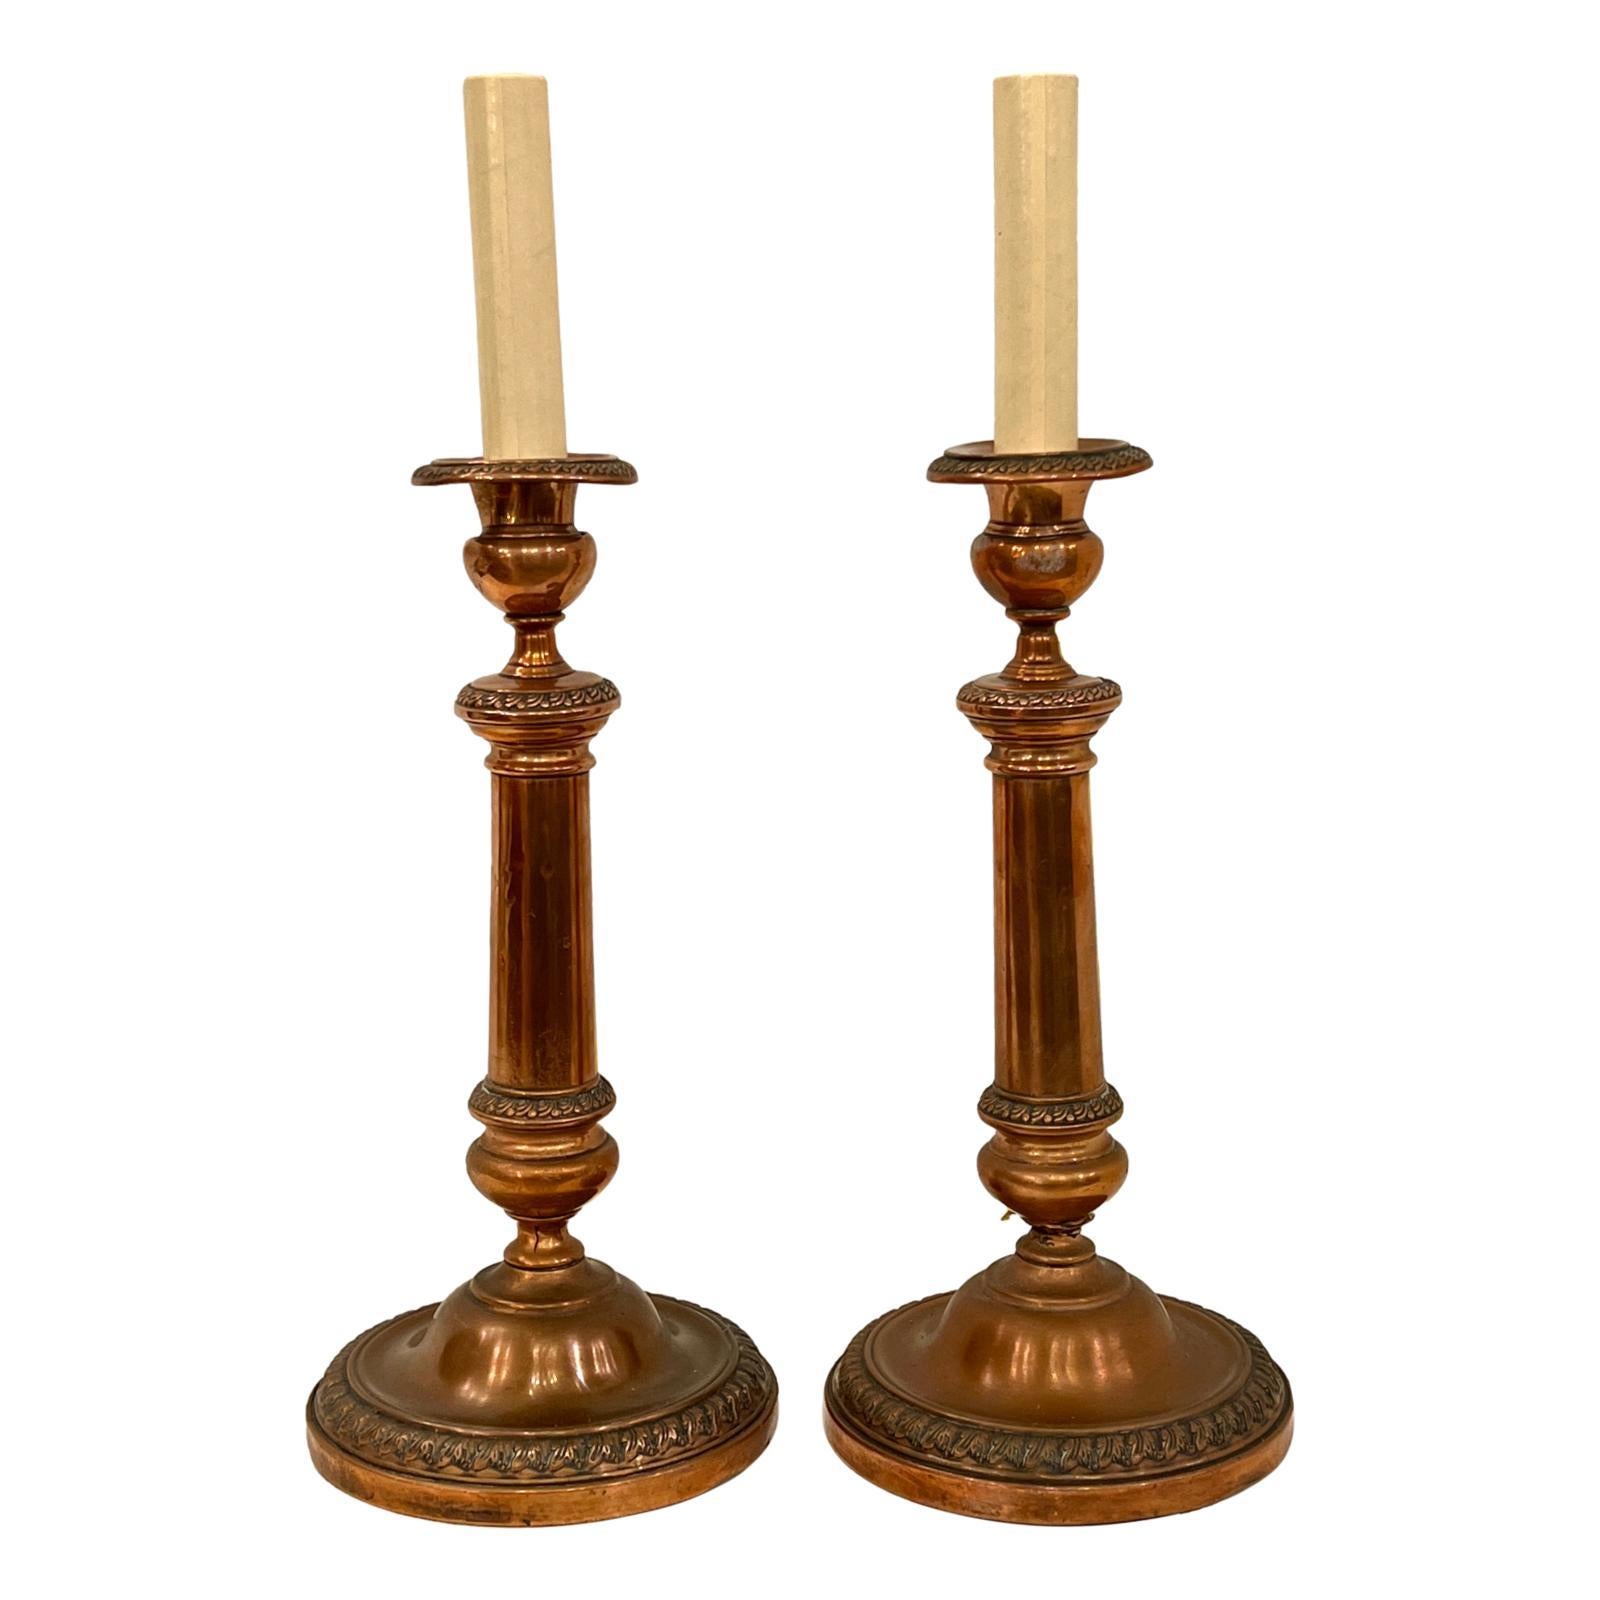 Ein Paar englische Kupfer-Kerzenhalter-Tischlampen um 1900.

Abmessungen:
Höhe des Körpers: 11,5